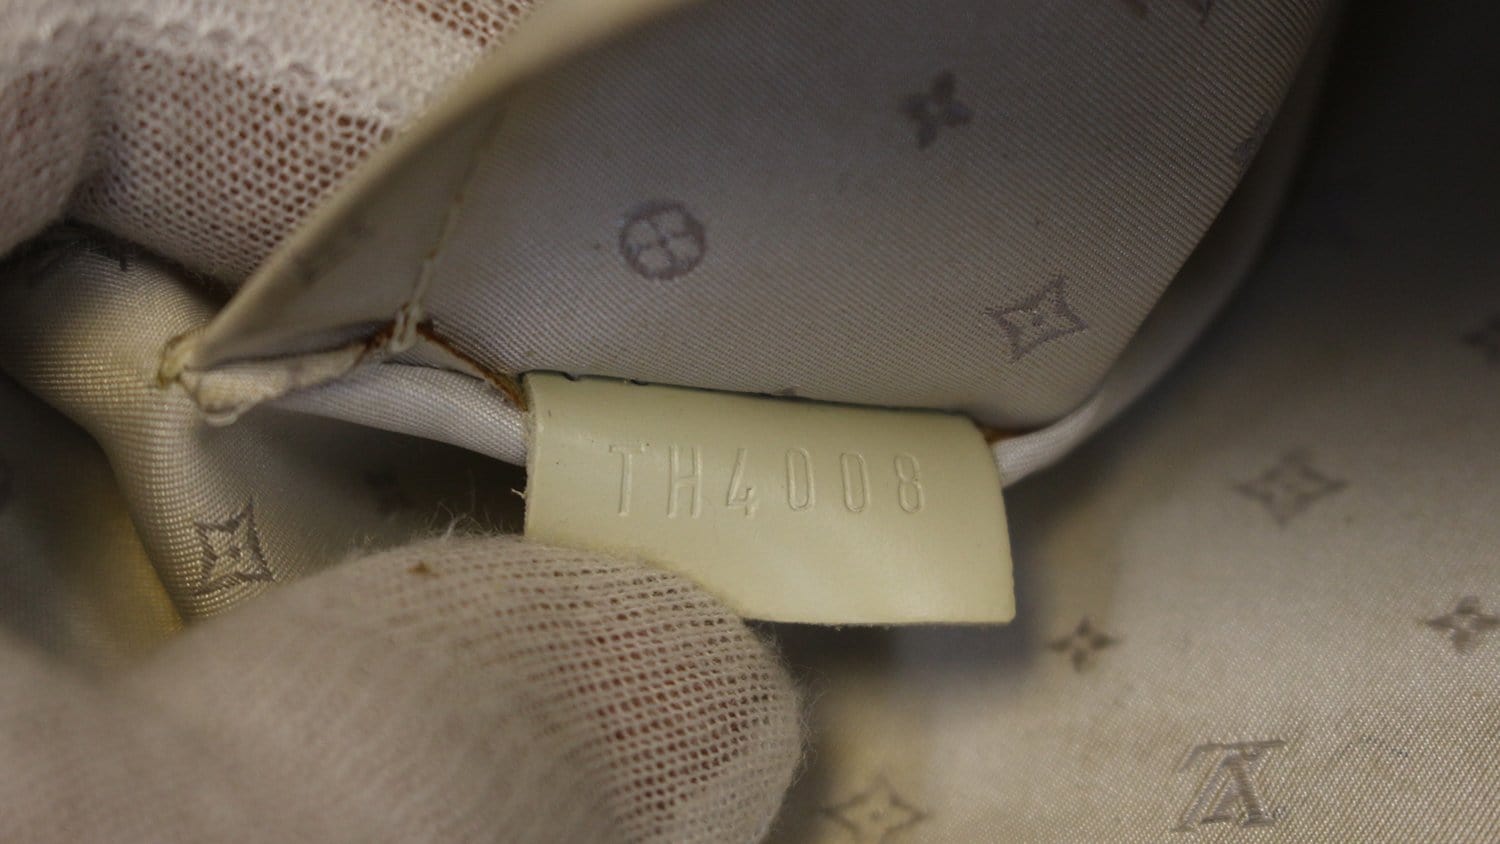 Louis Vuitton Le Radieux Suhali Leather Satchel Bag